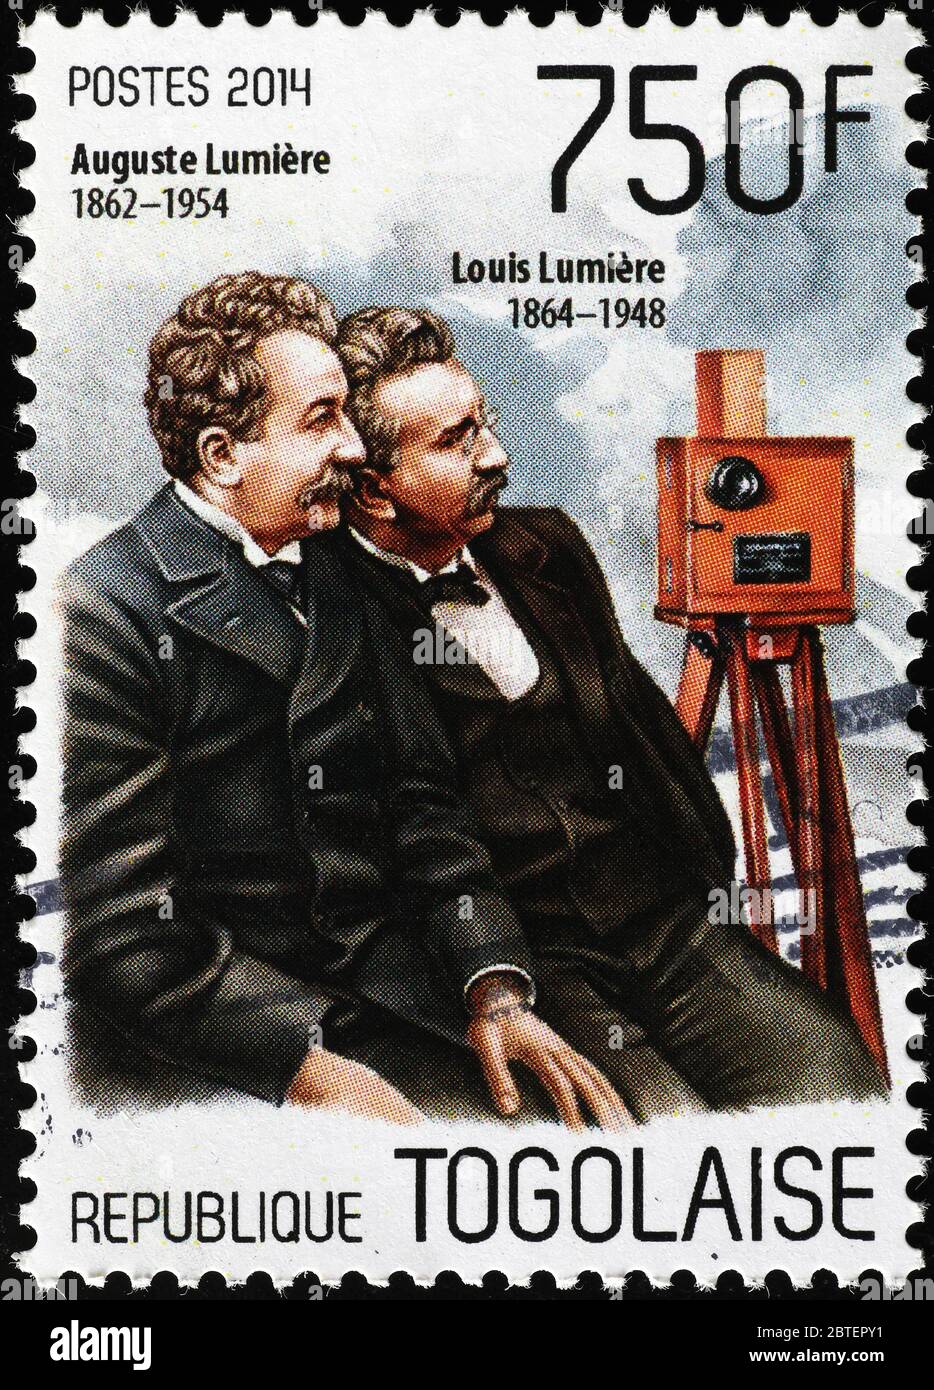 Frères Lumiere sur timbre-poste du Togo Banque D'Images